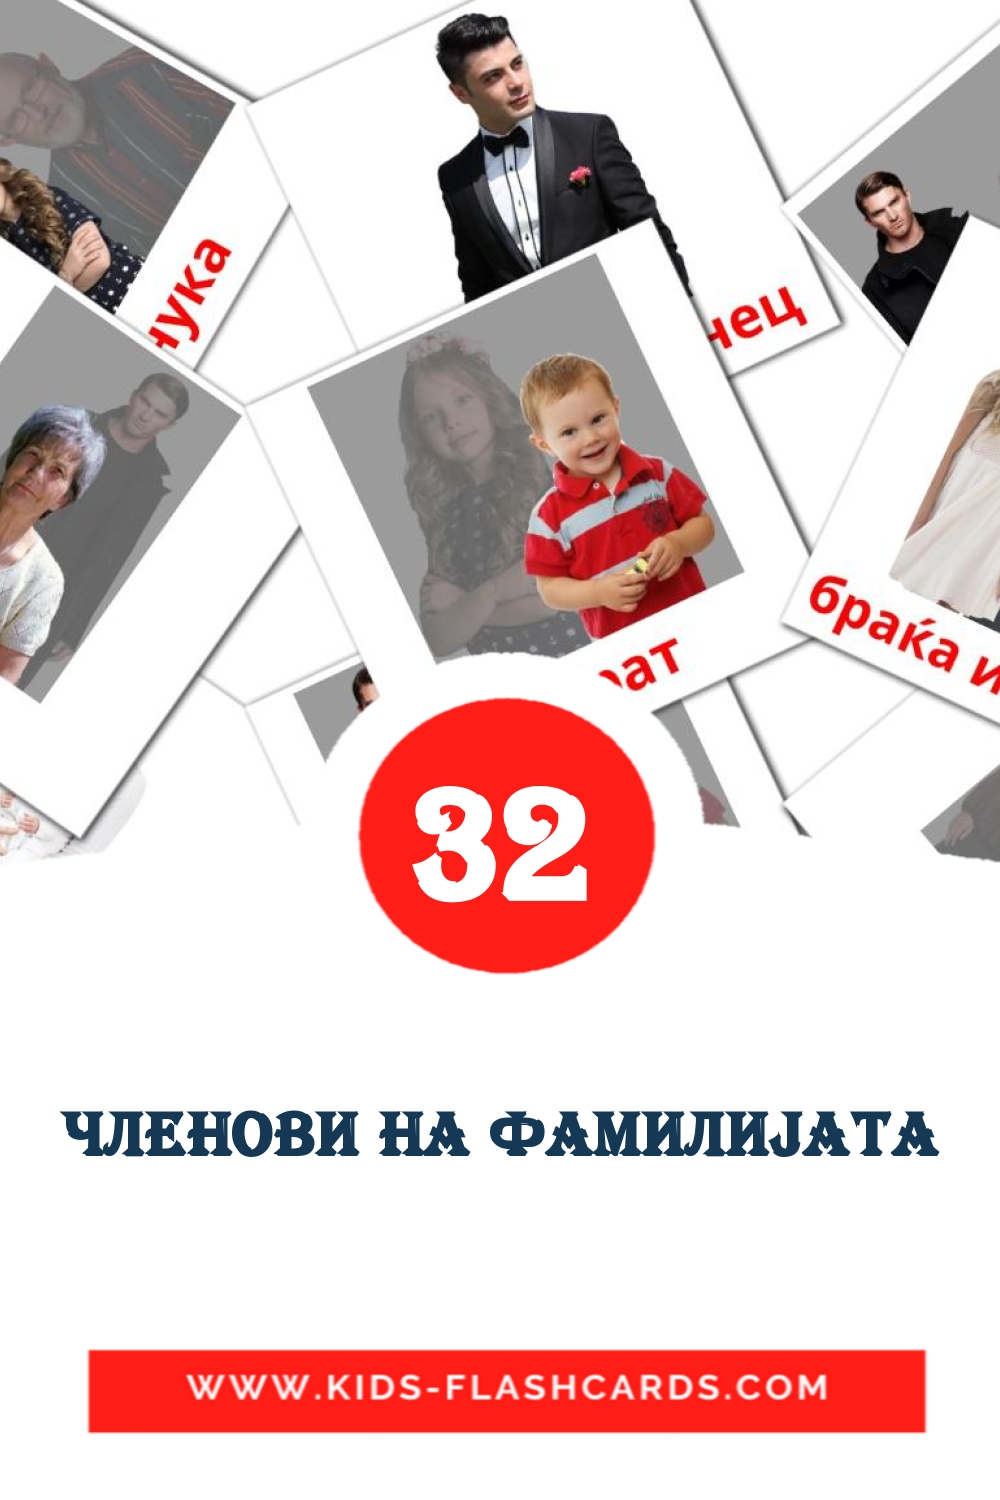 32 tarjetas didacticas de Членови на фамилиjата para el jardín de infancia en macedonio